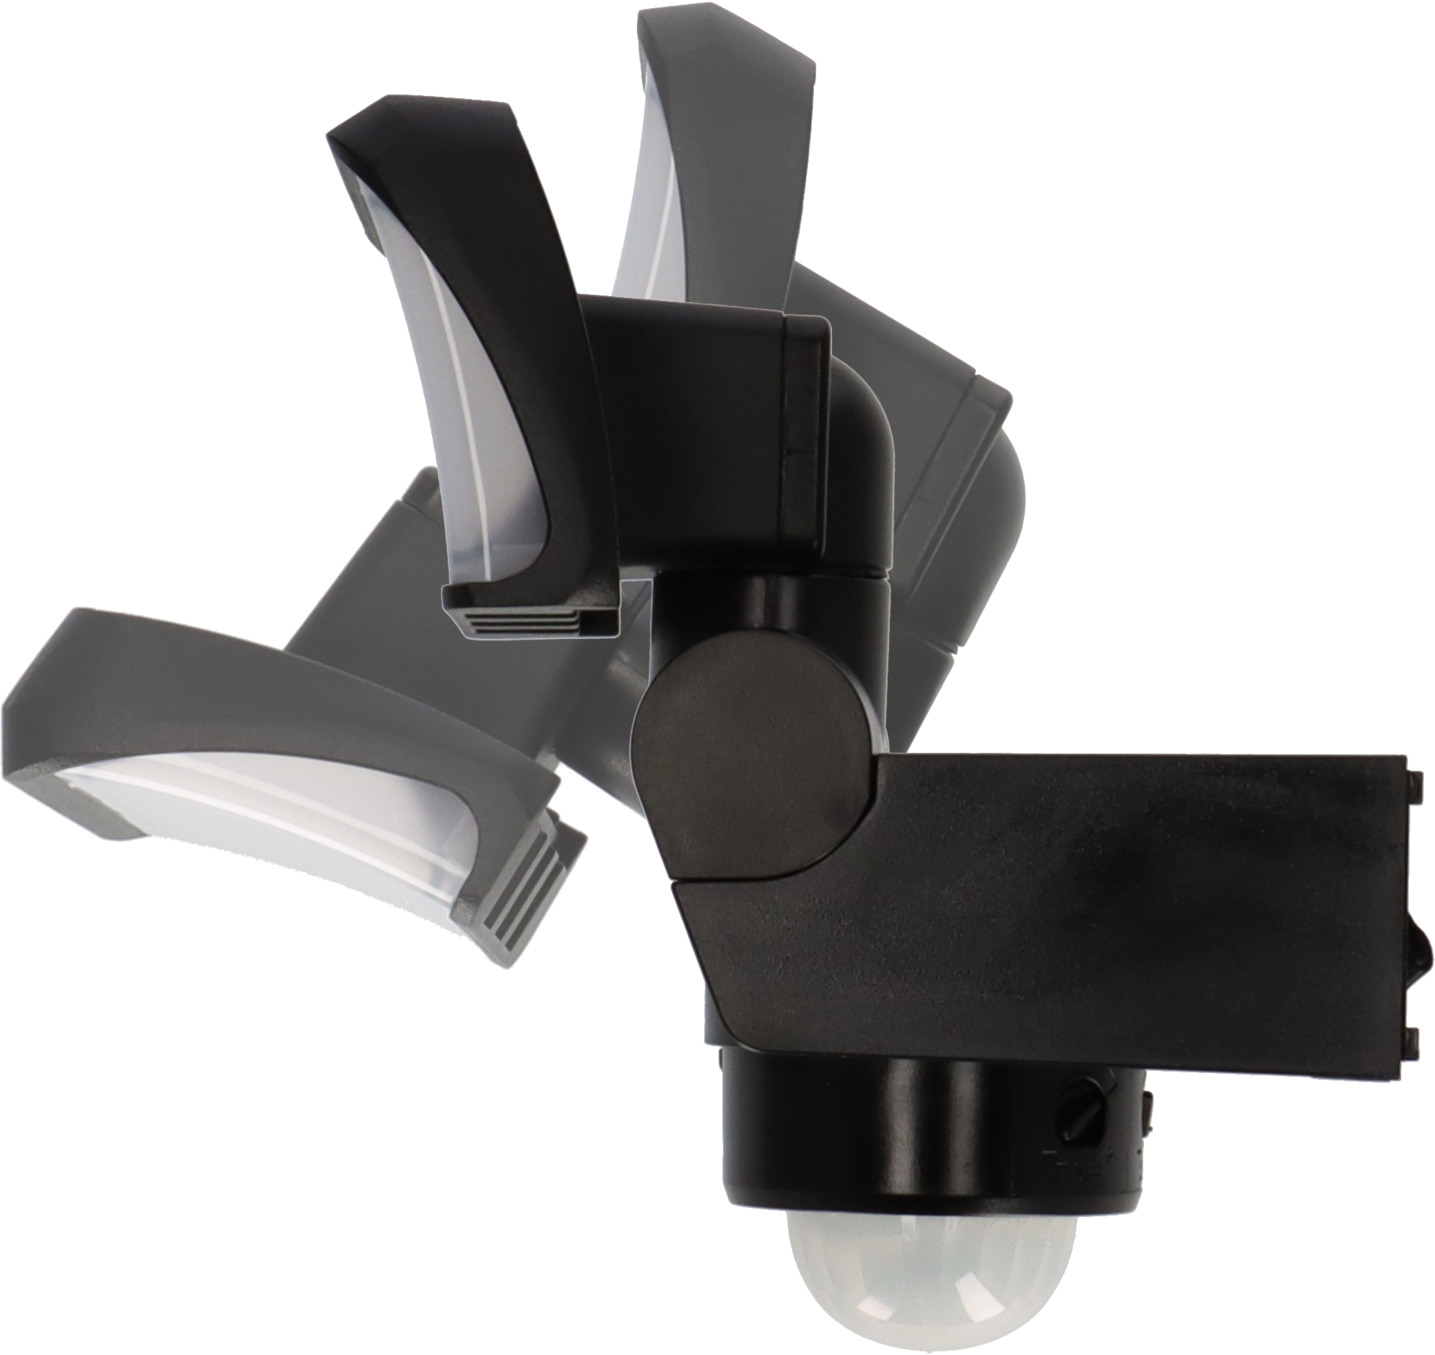 LED Strahler WS 2050 Bewegungsmelder, IP44, mit schwarz brennenstuhl® 1680lm, SP 